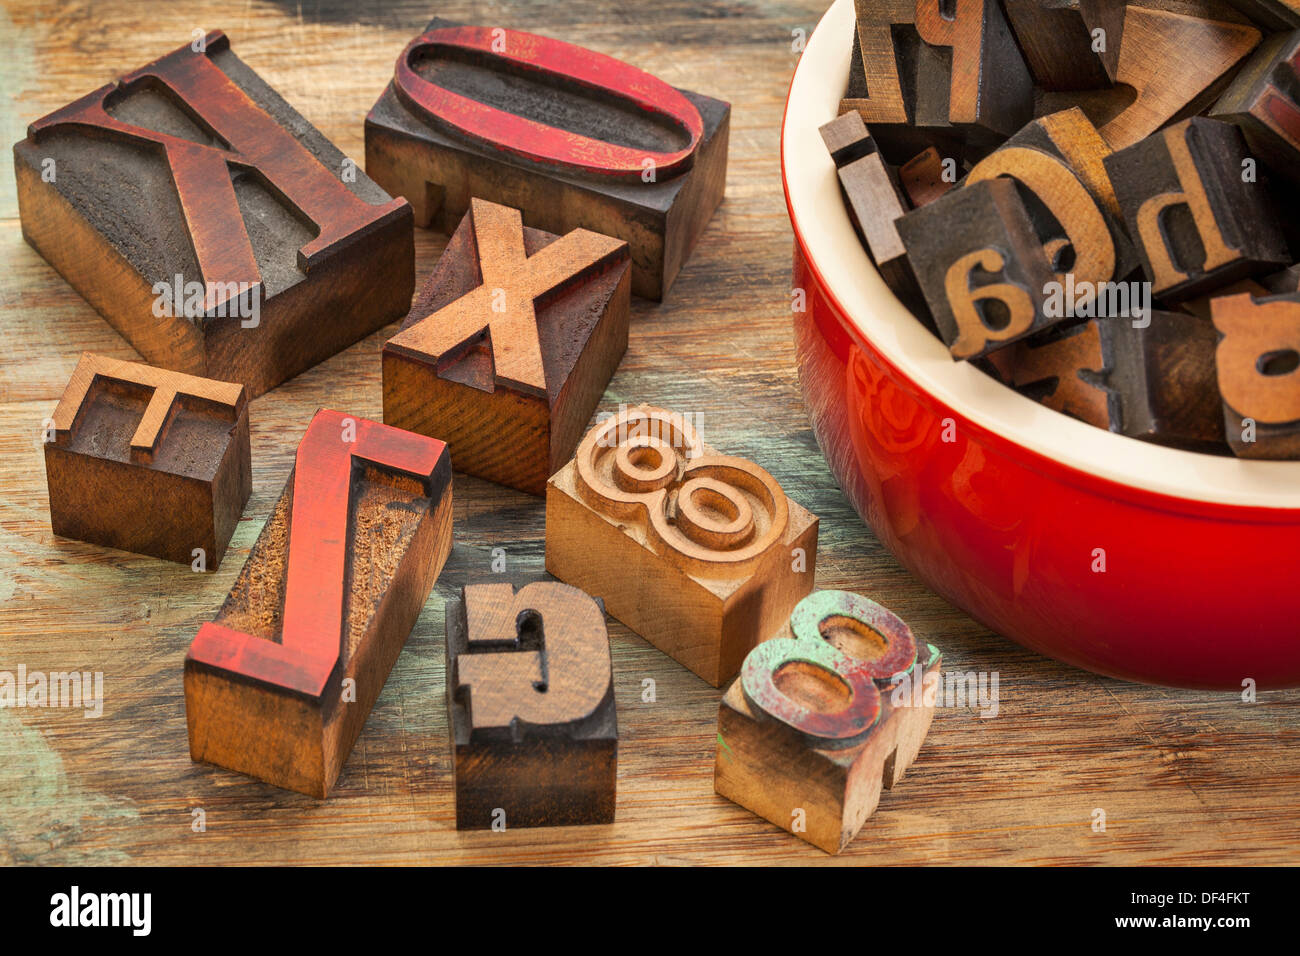 Typographie concept - un pot de bois type letterpress printing blocks Banque D'Images